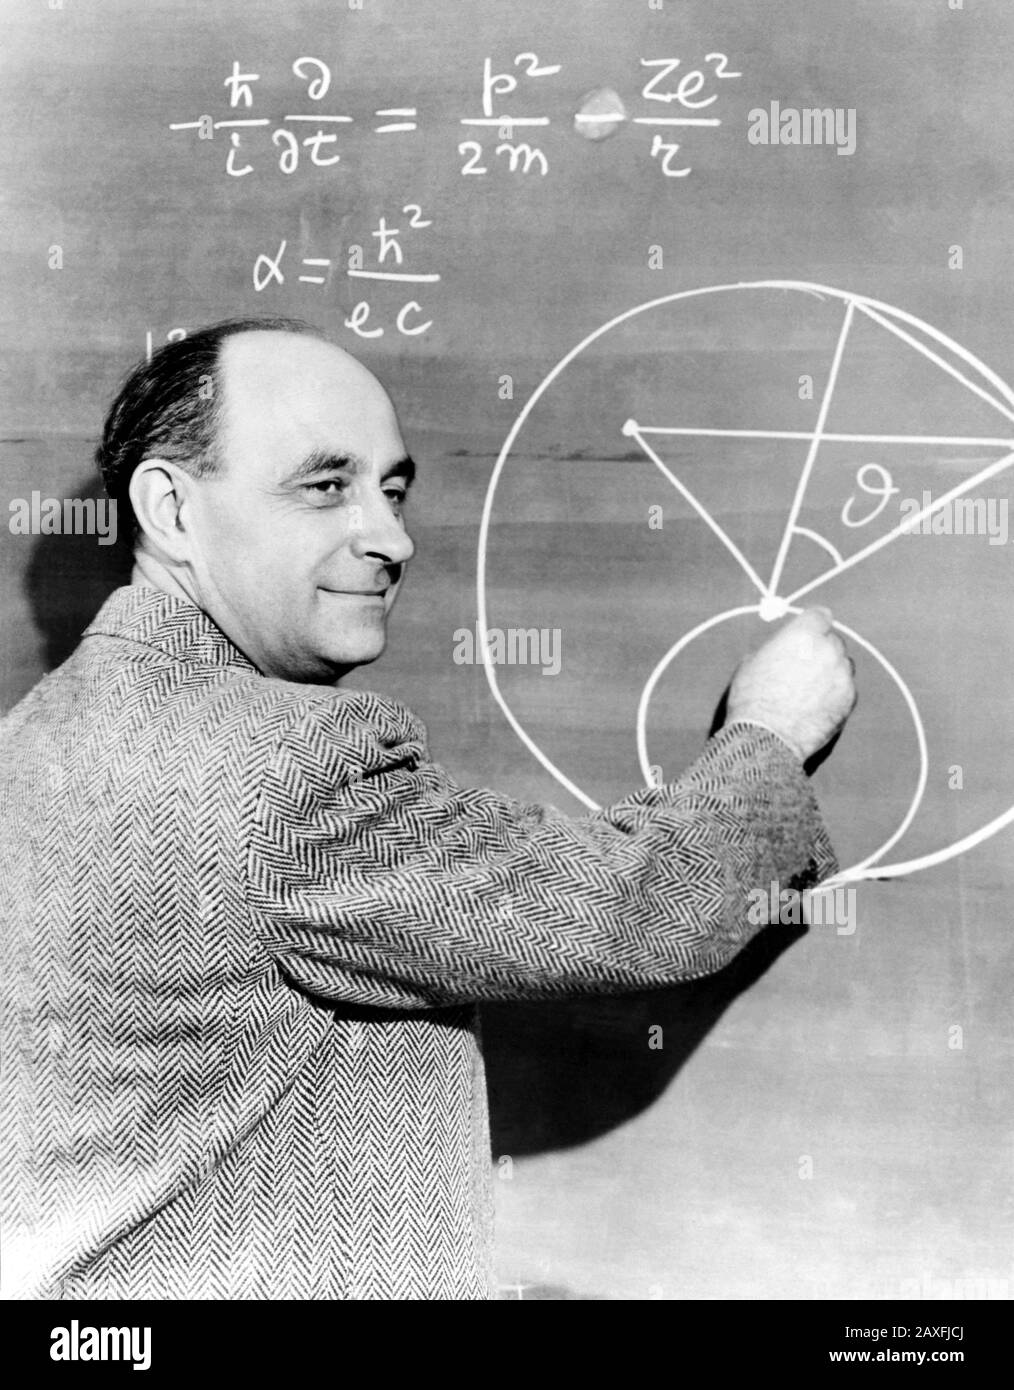 1940's , USA : the italian  physicist  ENRICO  FERMI  ( Roma 1901 - Chicago , U.S.A. 1954 ), was awarded the Nobel Prize in Physics in 1938- FISICO - FISICA - ATOMO - ATOMICO - RADIOTTIVITA' - SCIENZIATO - SCIENZA - PHYSICS - ATOM - ATOMIC - RADIOACTIVITY - SCIENCE - SCIENTIST- HISTORY - formula - lavagna -  foto storiche - foto storica  - scienziato - scientist  - portrait - ritratto  -  Physics - FISICA - FISICO - SCIENZA - SCIENCE  - smile - sorriso - PREMIO NOBEL PER LA FISICA © Archivio GBB / Stock Photo